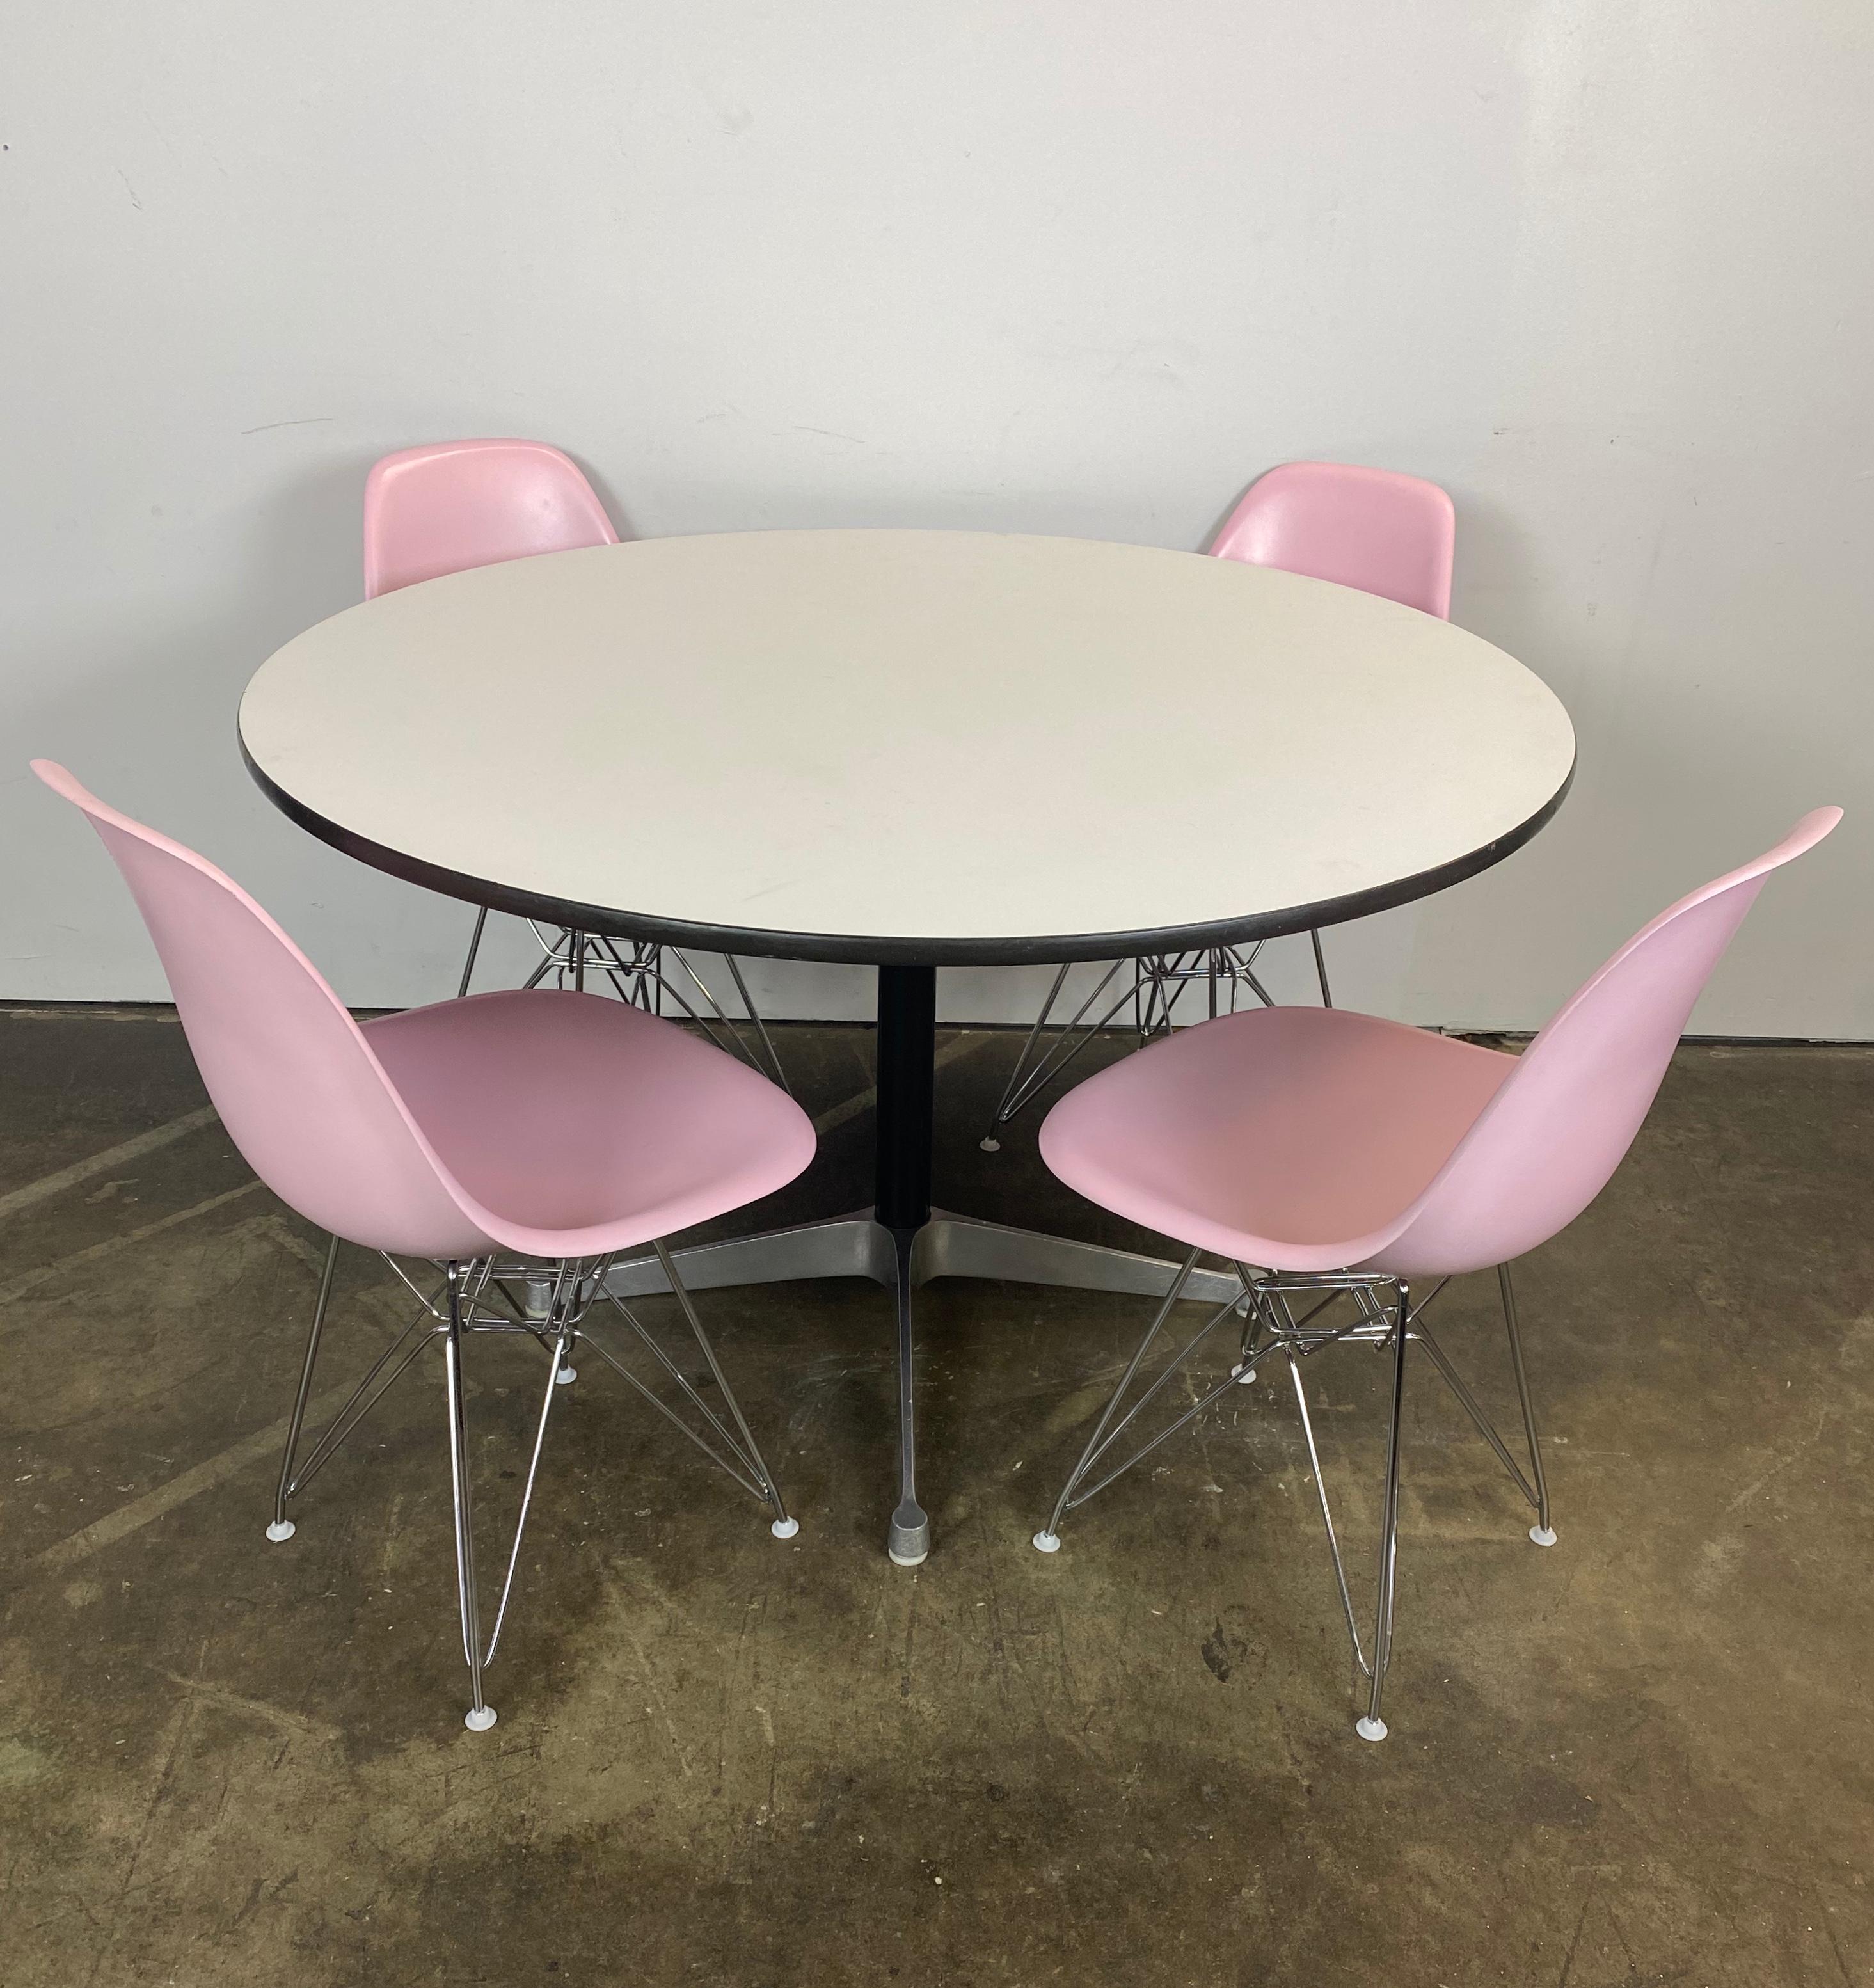 Magnifique ensemble de salle à manger Herman Miller Eames. Avec 4 chaises DSR de modèle rose, recouvertes de rose et posées sur de nouveaux piétements Eiffel. Toutes les chaises sont signées Herman Miller et garanties authentiques. Les patins en